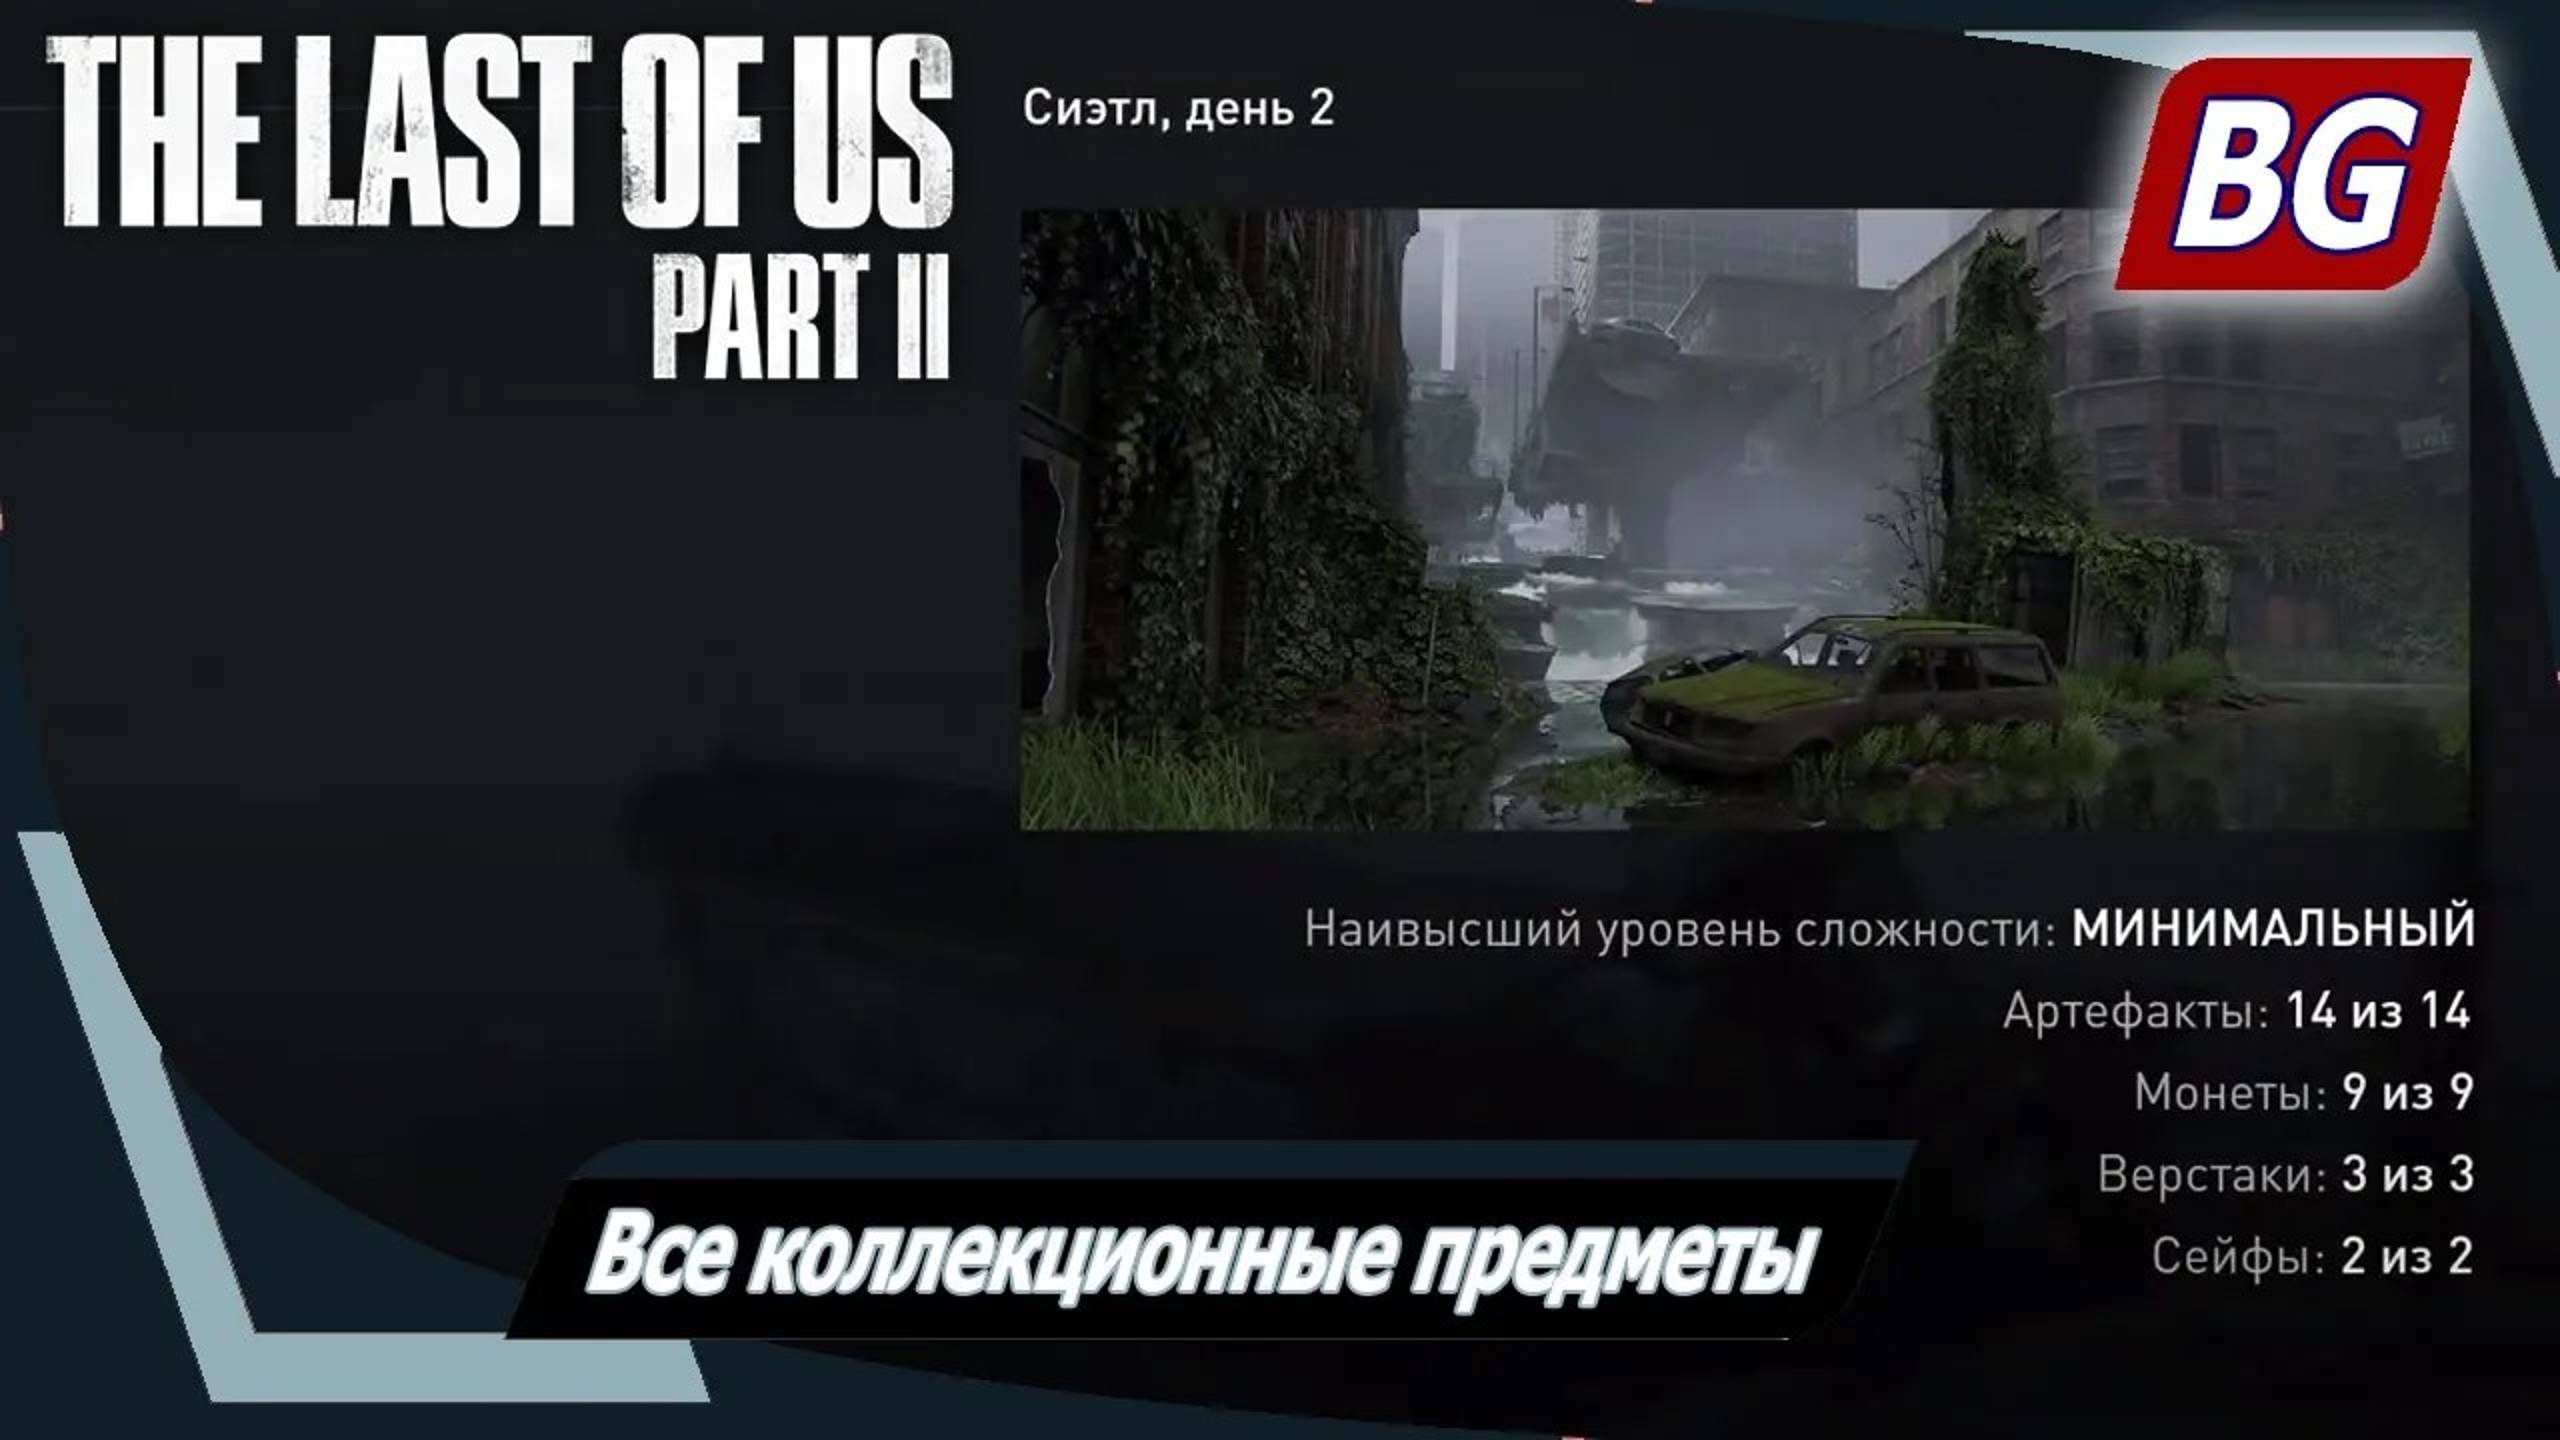 The Last of Us Part II ➤ Все коллекционные предметы ➤ Сиэтл, день 2 (глава 33-36)